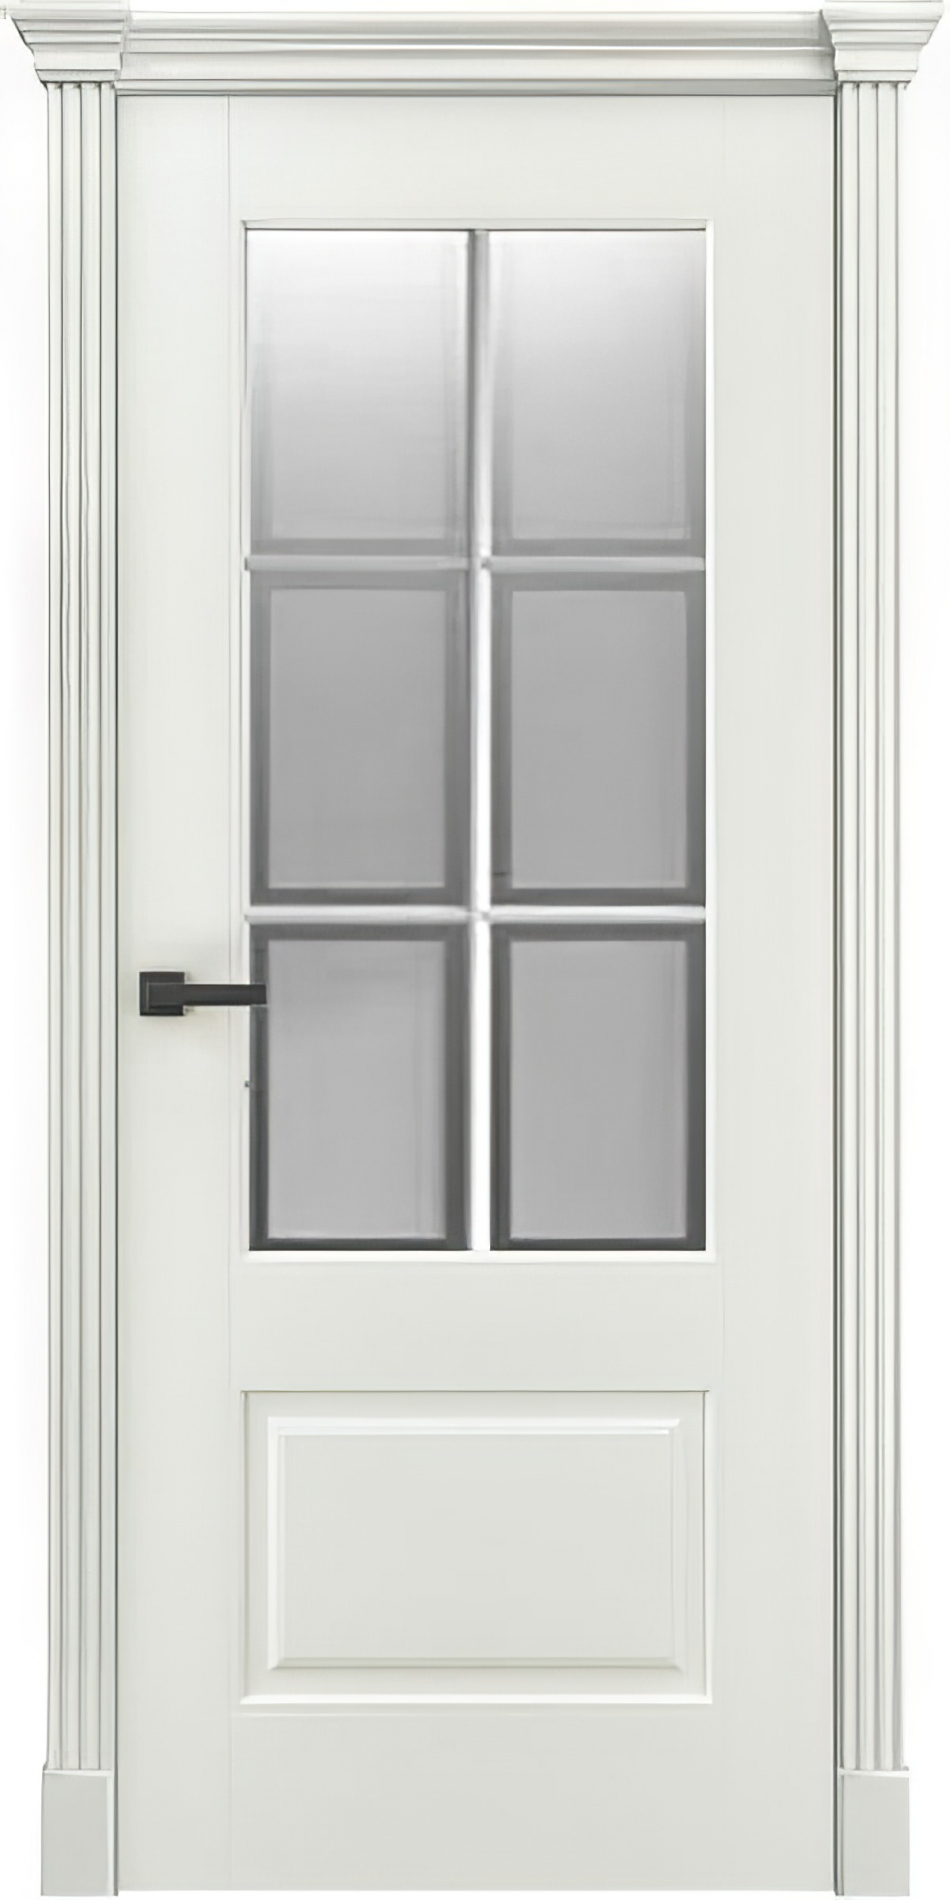 межкомнатные двери  Дариано Корнелия 2 с решёткой Фацет эмаль